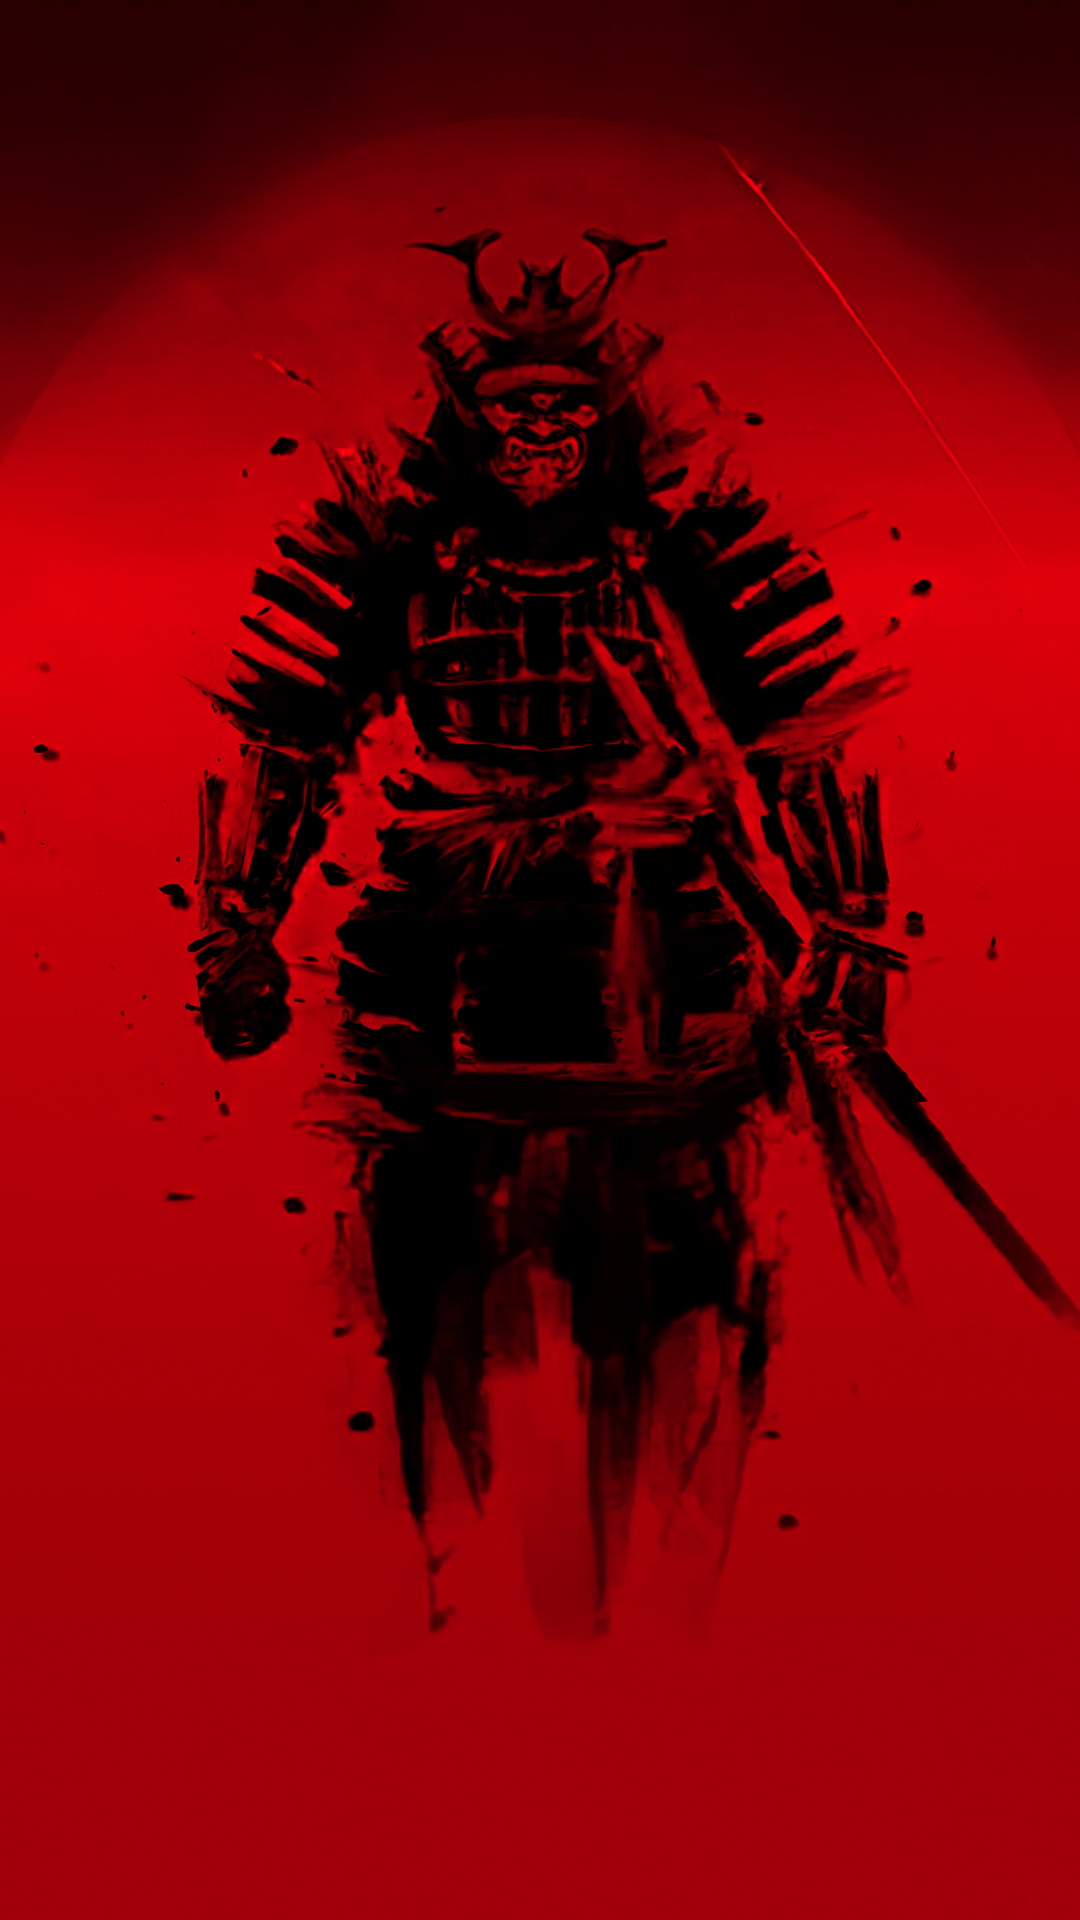 General 1080x1920 samurai red Japan digital art smartphone portrait display